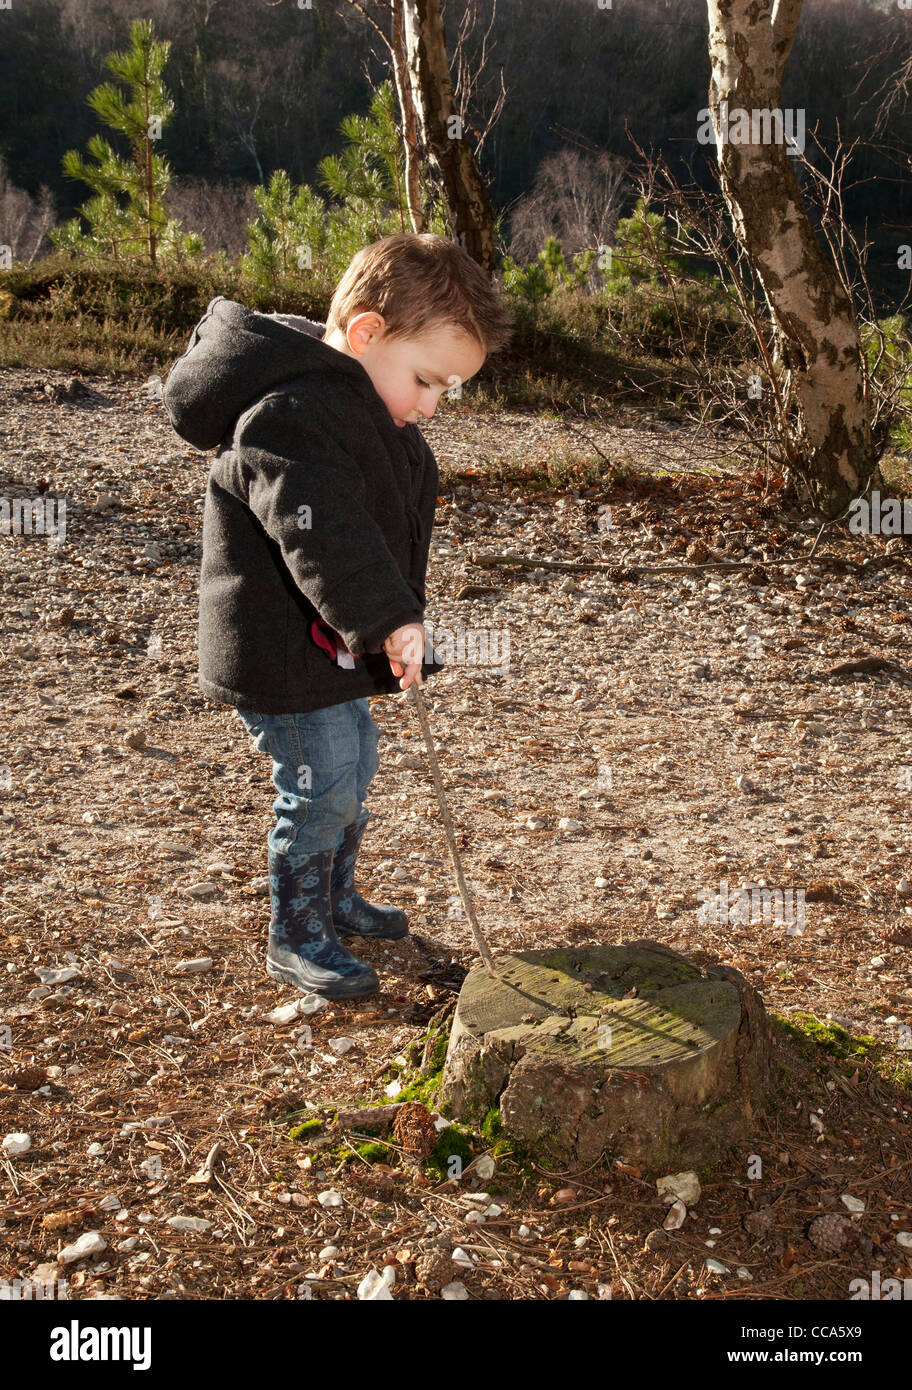 kleiner Junge mit einem Stock spielen lernen durch Entdeckung und draußen in den Wäldern Spaß erleben Stockfoto